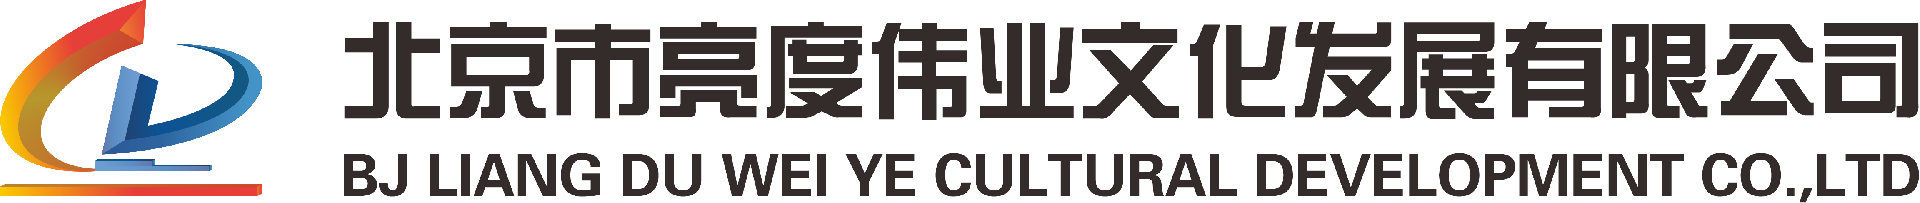 经典案例-北京市亮度伟业文化发展有限公司-北京市亮度伟业文化发展有限公司